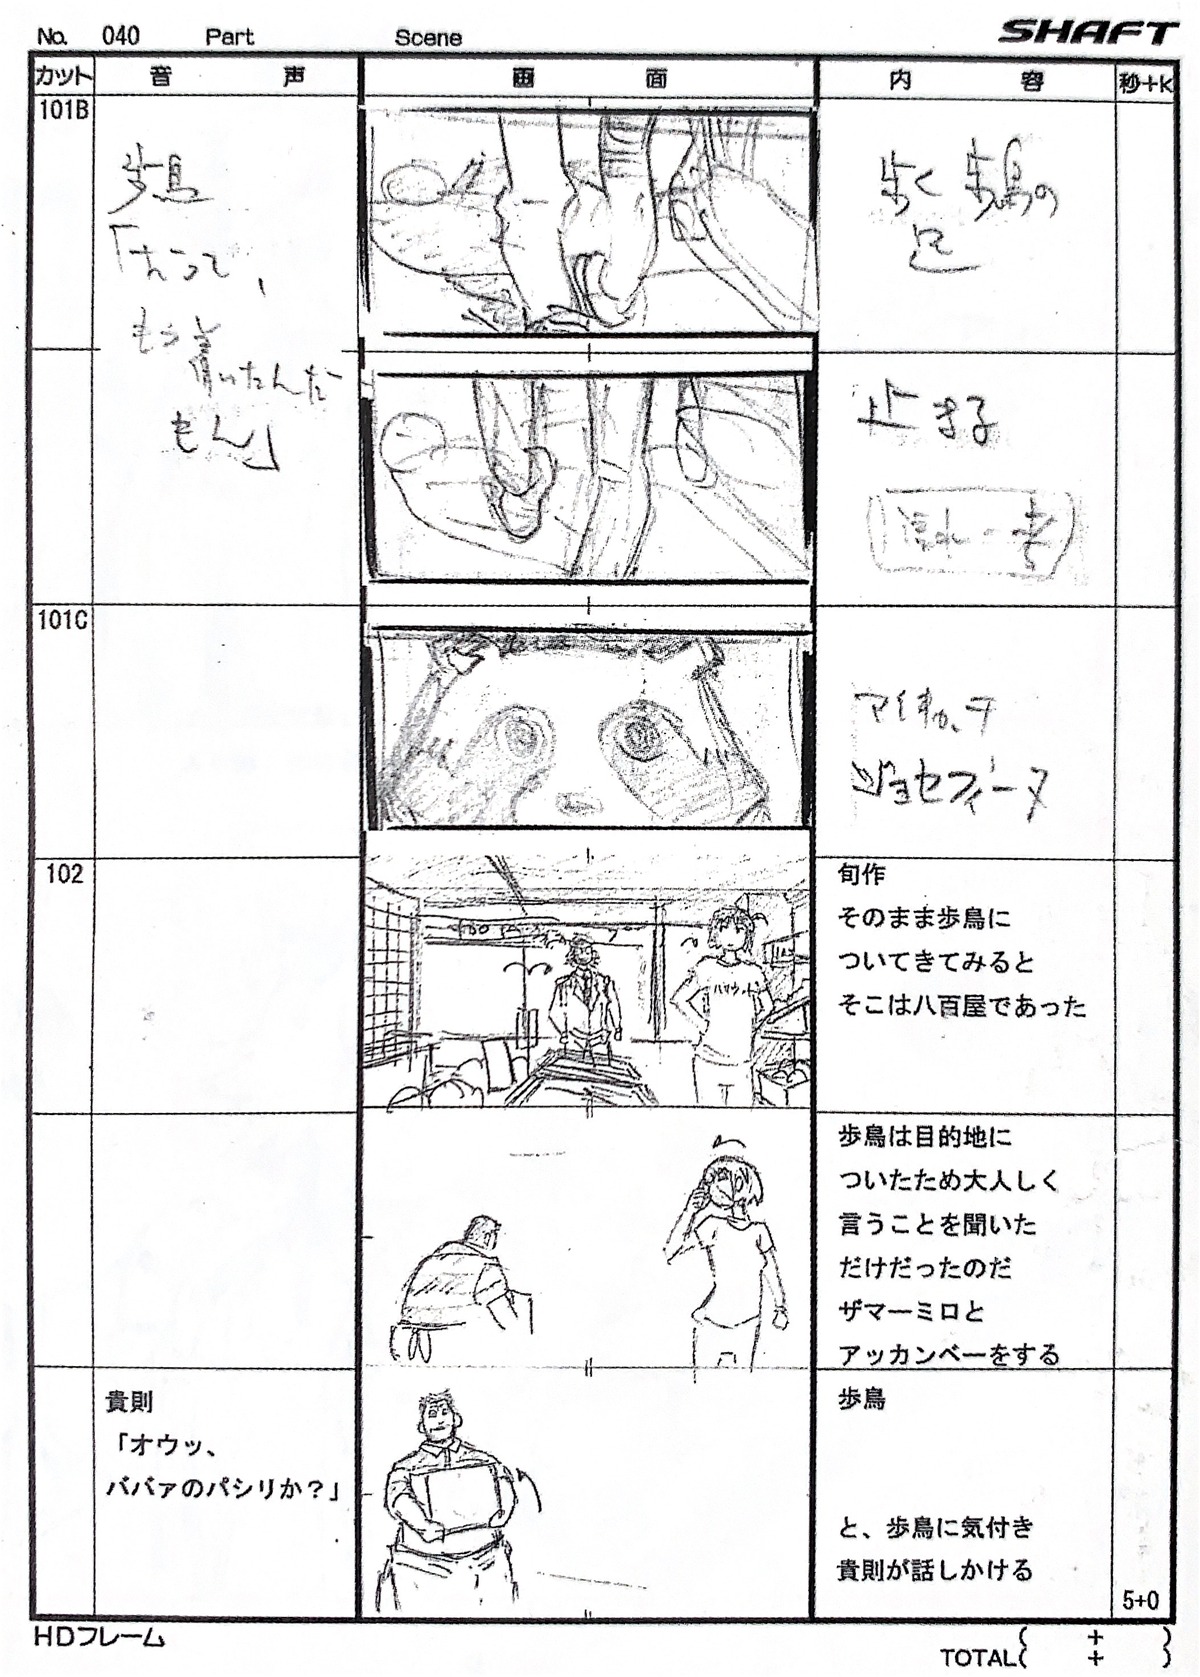 akiyuki_shinbo naoyuki_tatsuwa production_materials soredemo_machi_wa_mawatteiru storyboard